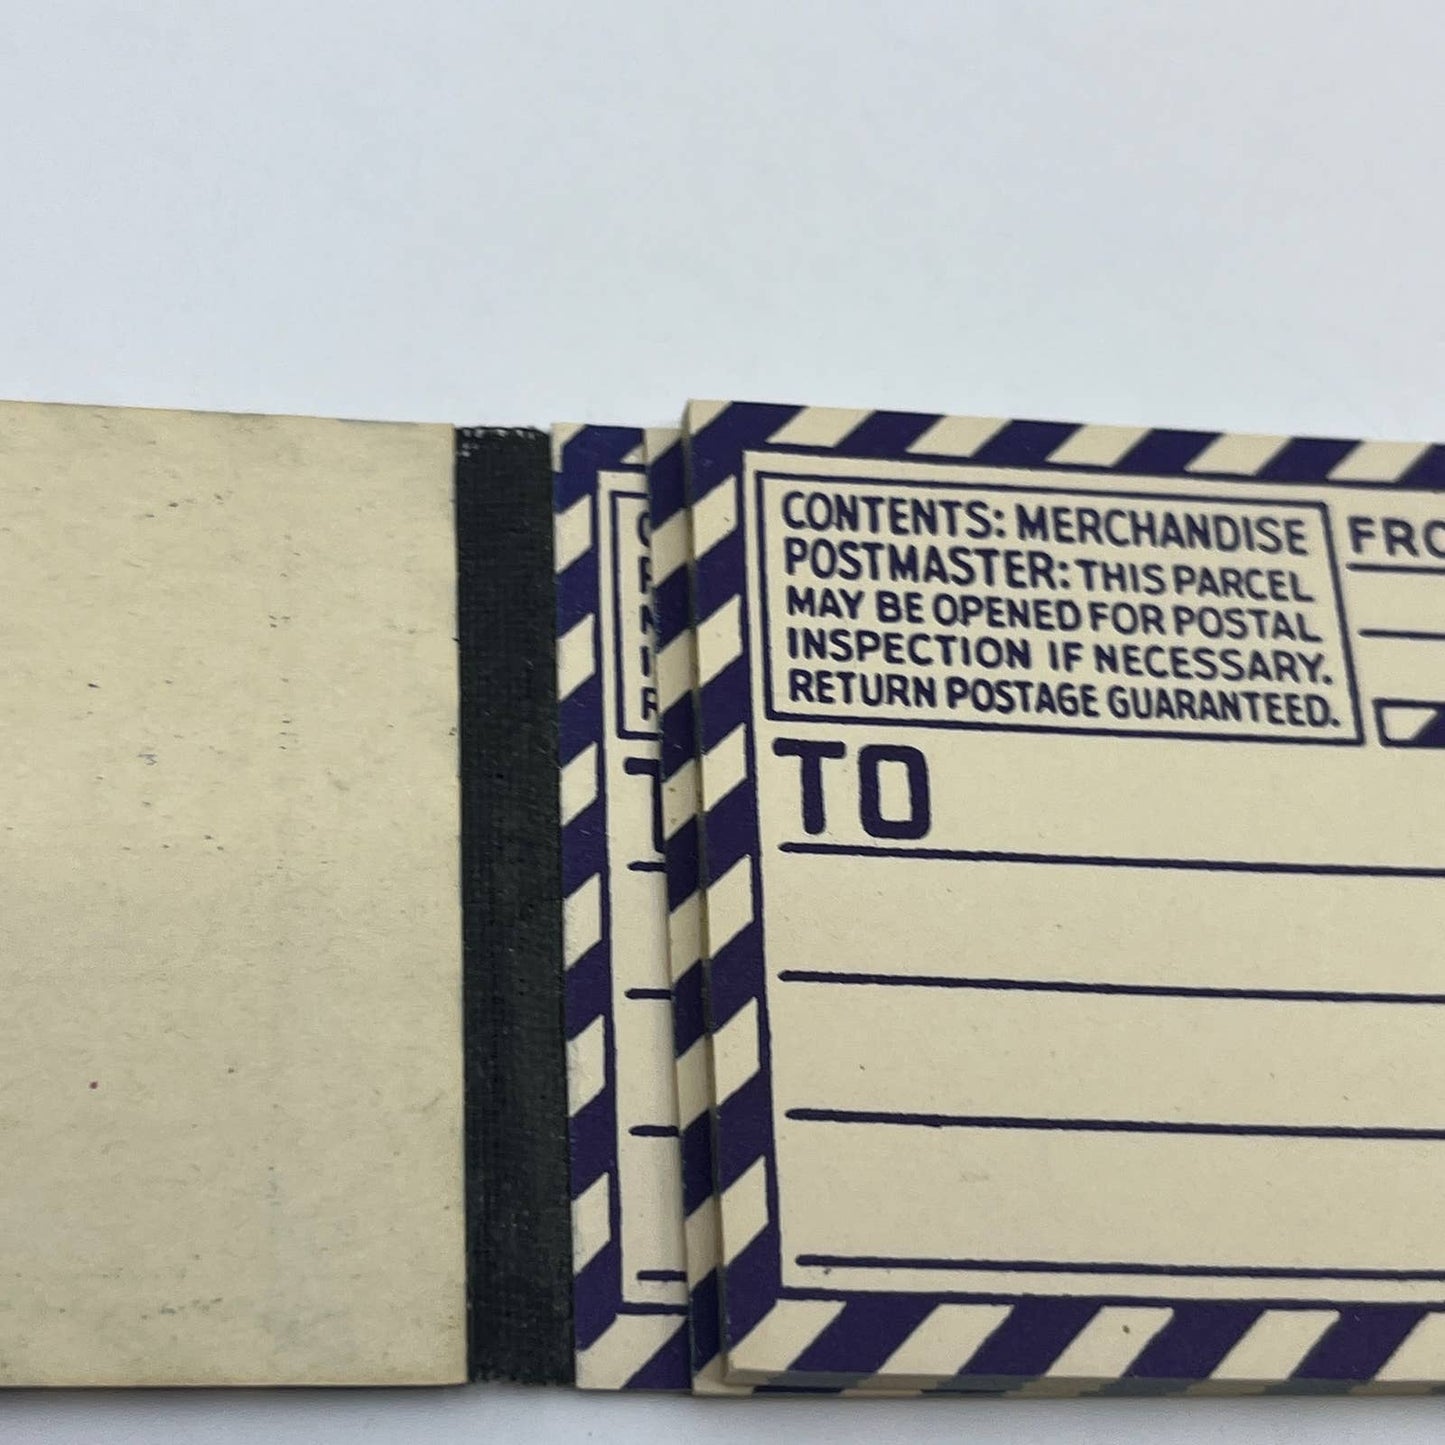 Vintage USPS Postal Service 40 Parcel Post Mailing Labels Gummed Bundle TG6